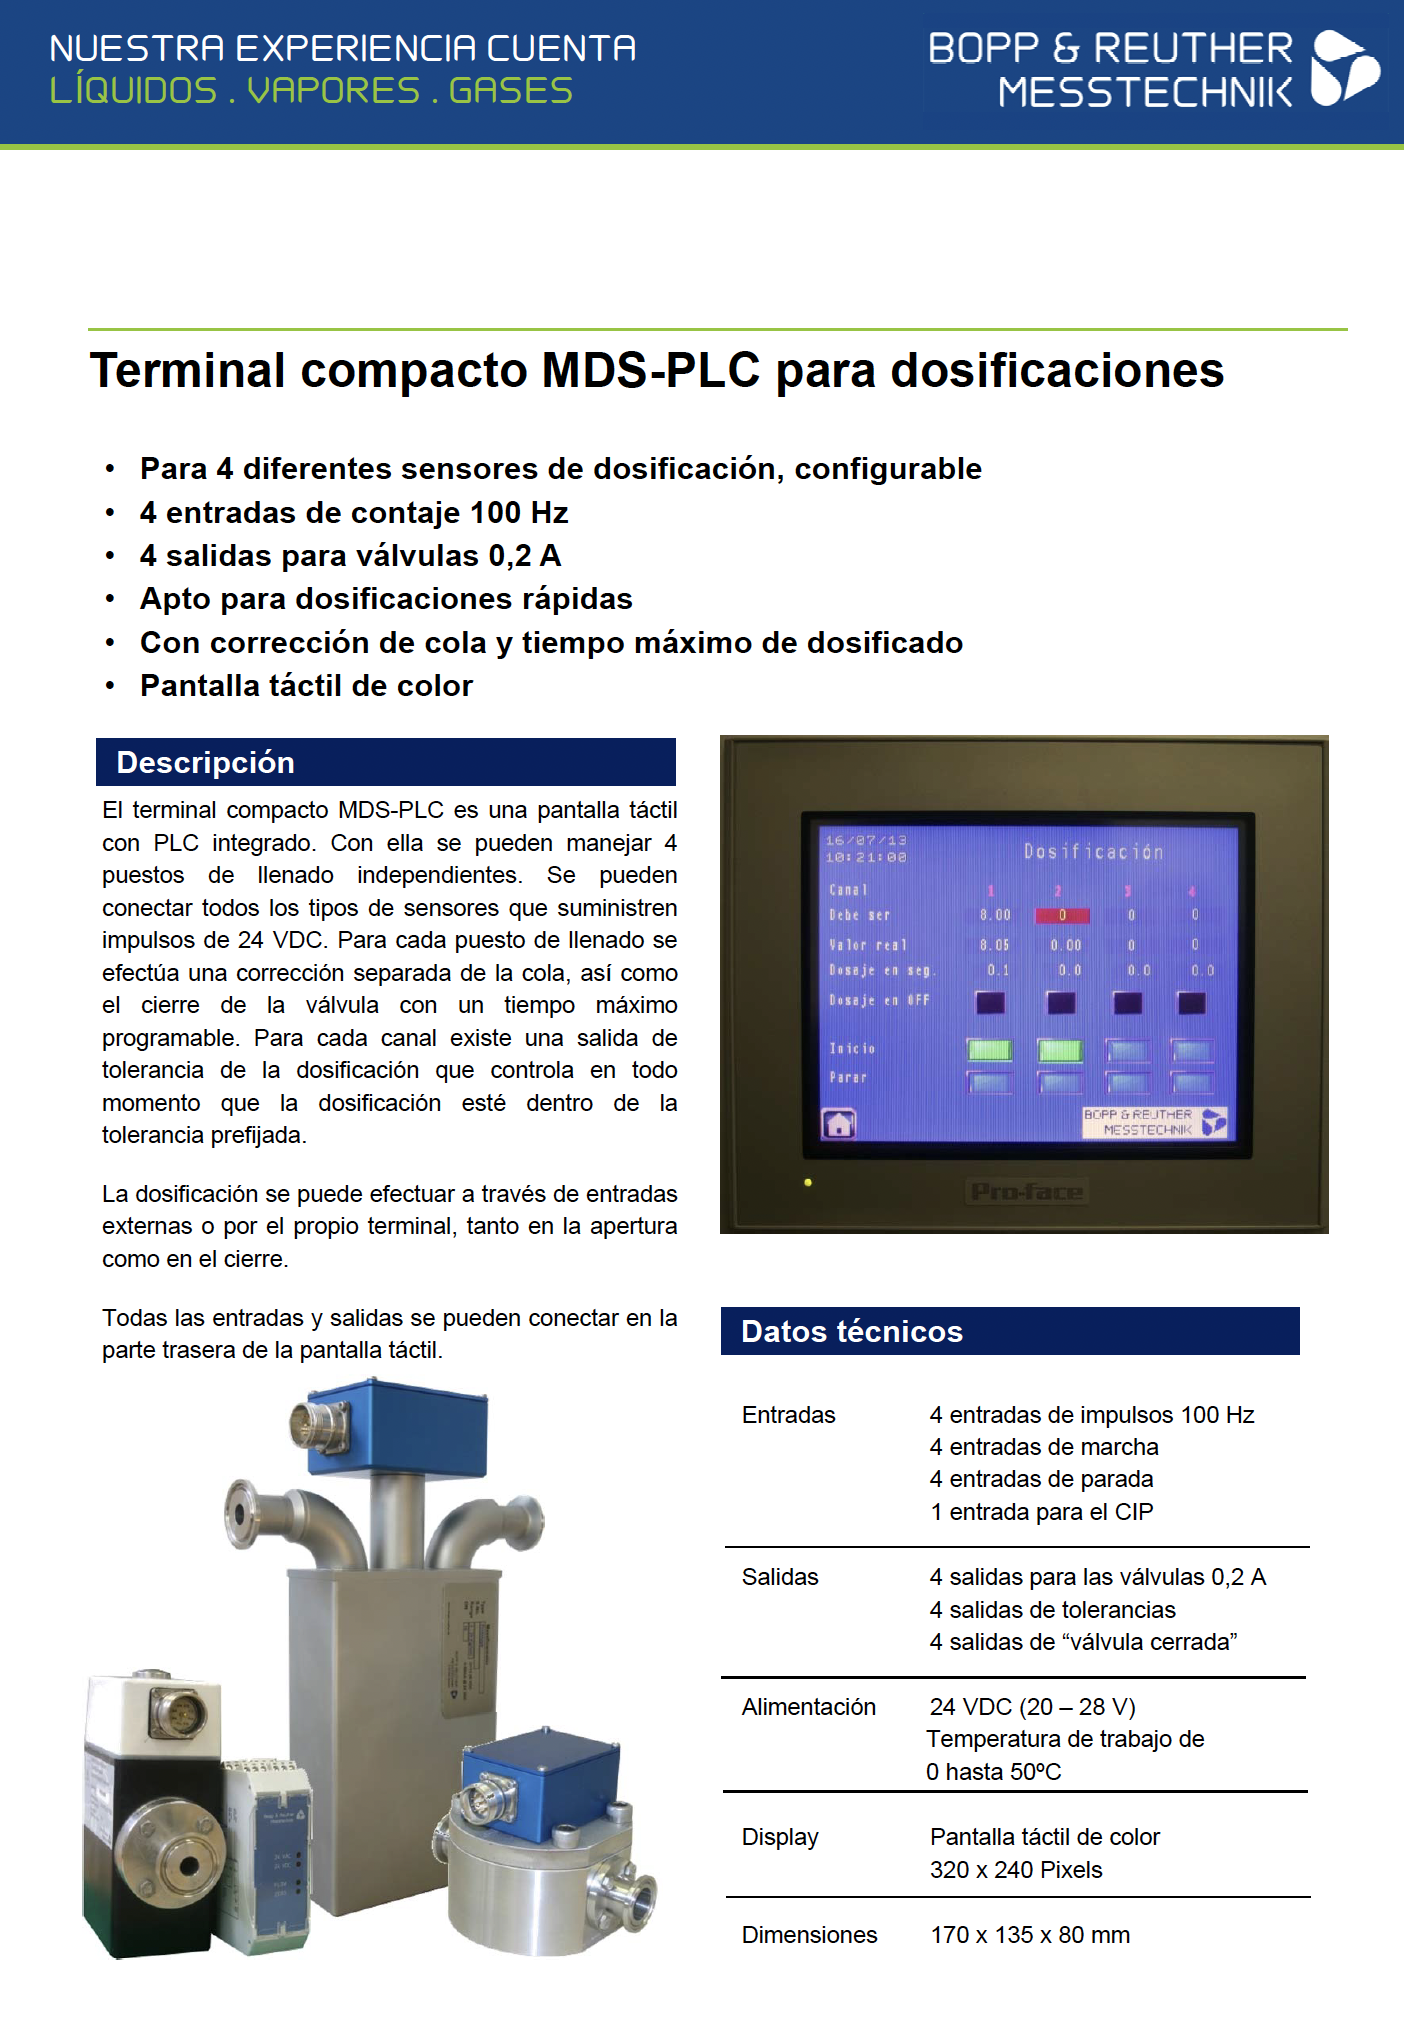 Terminal compacto MDS-PLC para dosificaciones de Bopp&Reuther